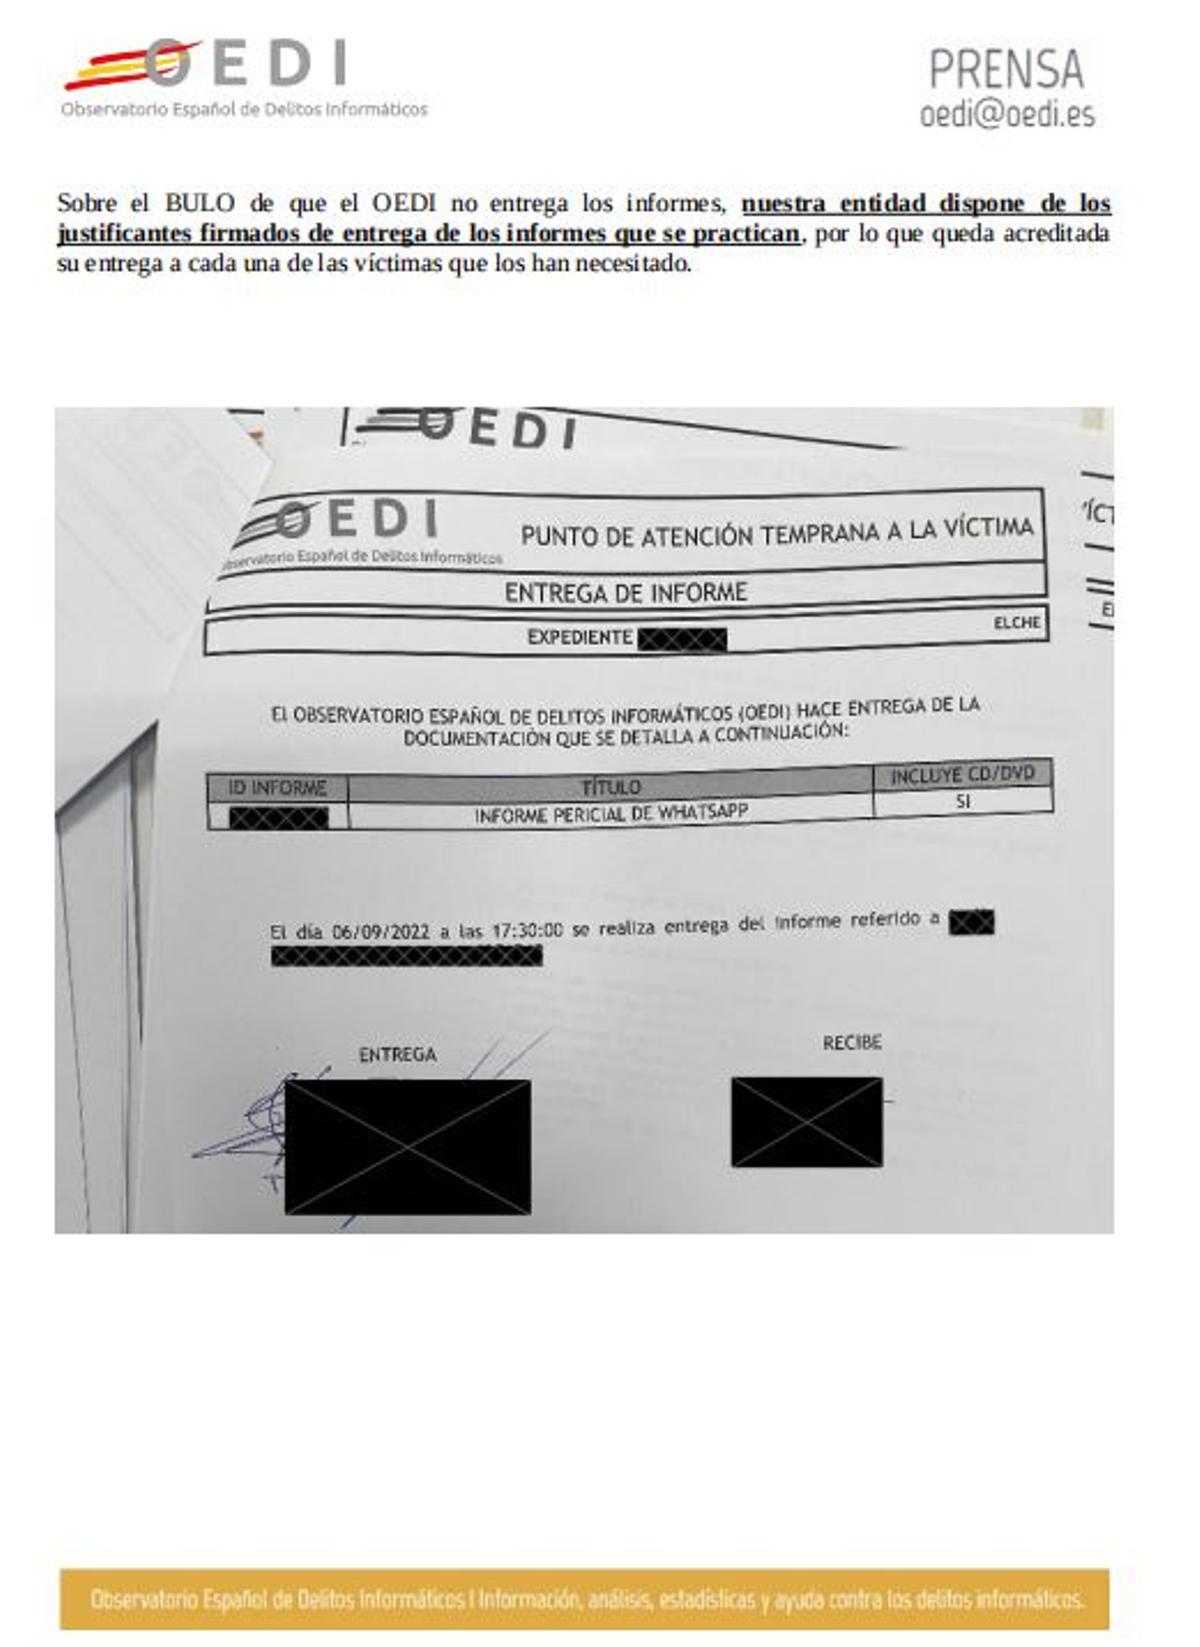 Documento enviado por la OEDI para acreditar su labor donde reproduce uno de los expedientes, con los datos borrados